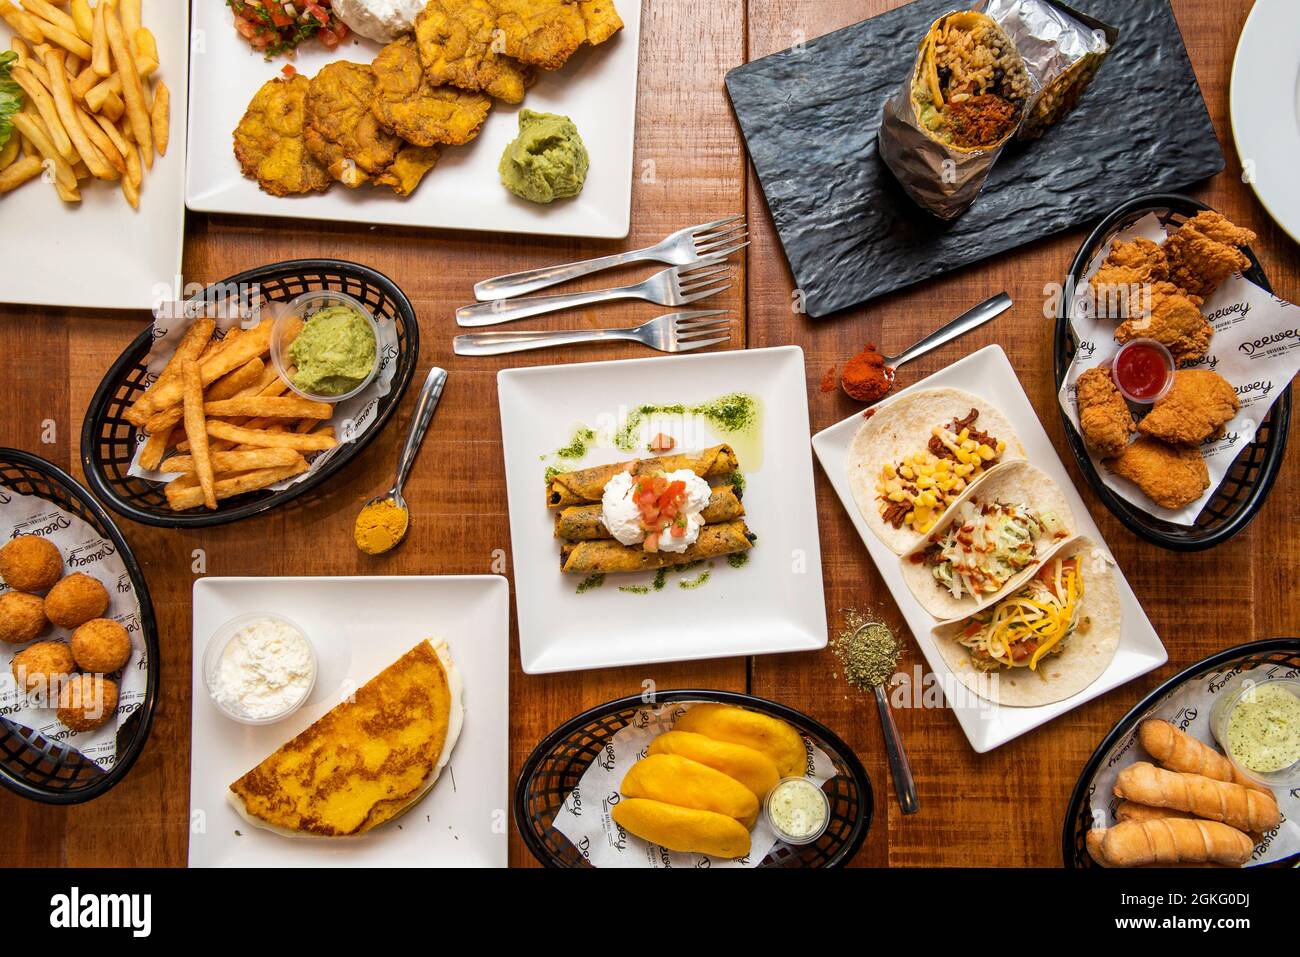 Bild von oben mit Tex-Mex-Gerichten und venezolanischen Gerichten. Tacos, Tequenos, arepas, guacamoles, cachapa, Kroketten, Pataconen, goldene Tacos Stockfoto